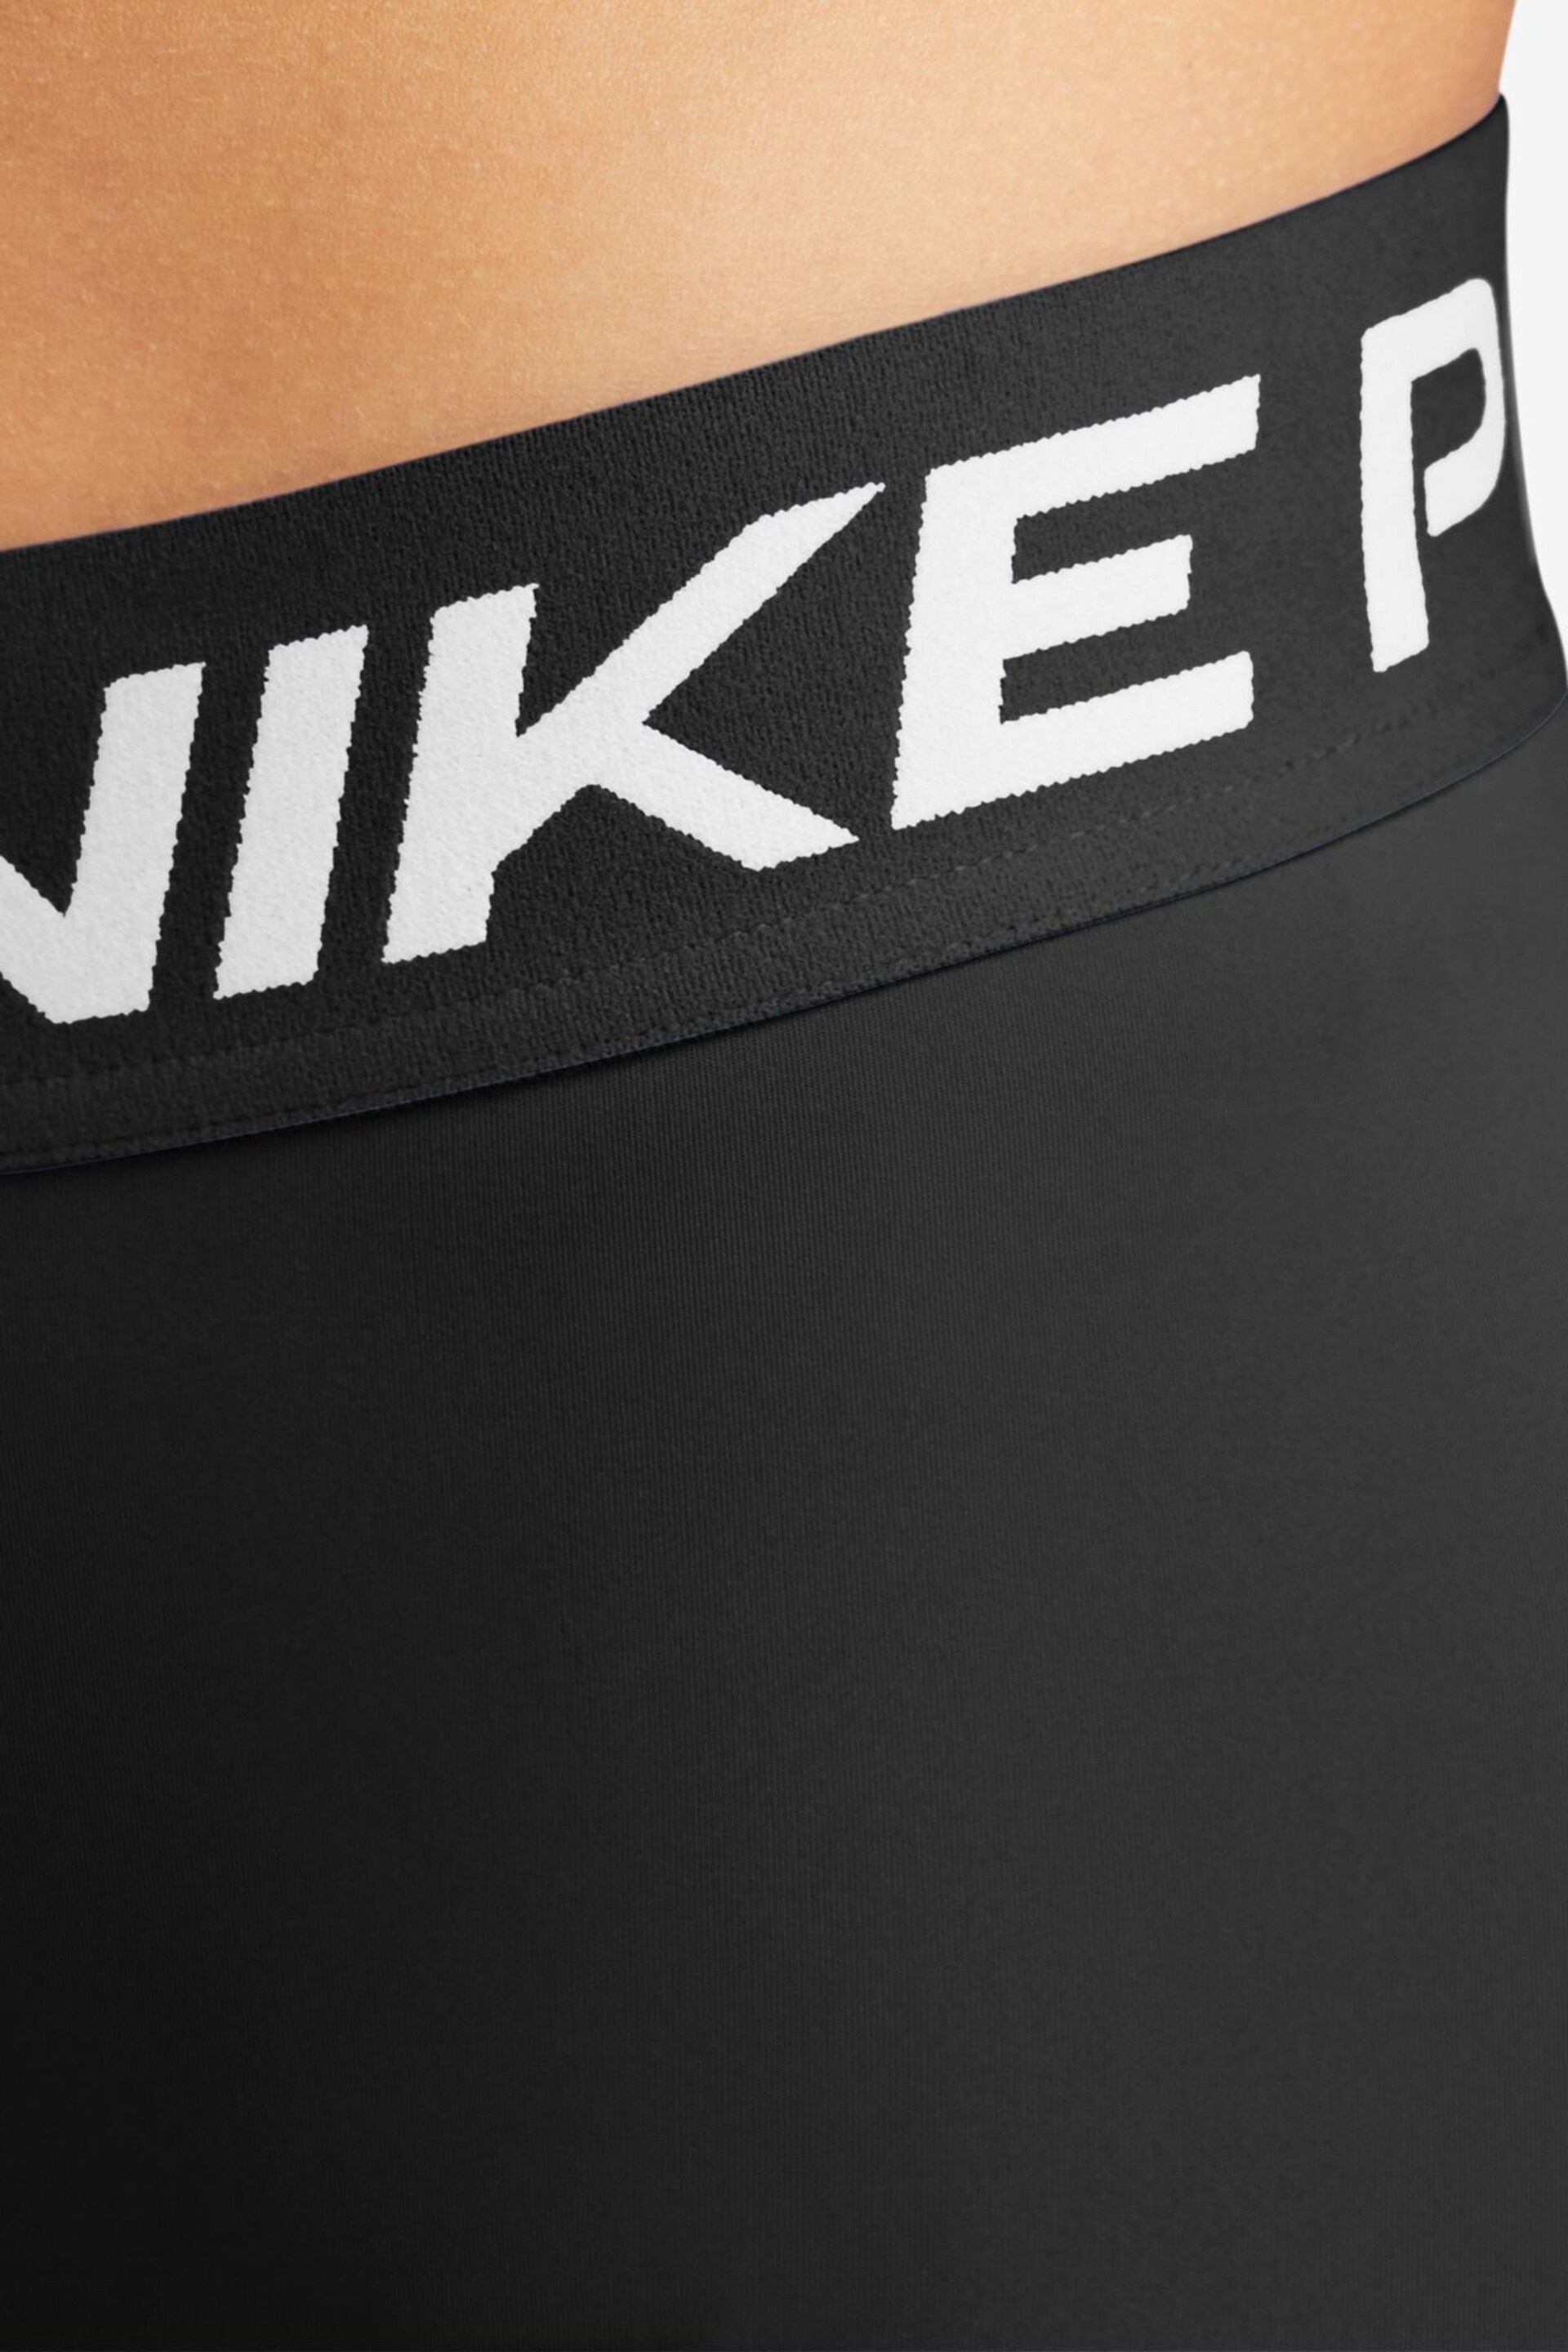 Nike Black Dri-FIT Pro 365 Mid Rise 7/8 Leggings - Image 5 of 7